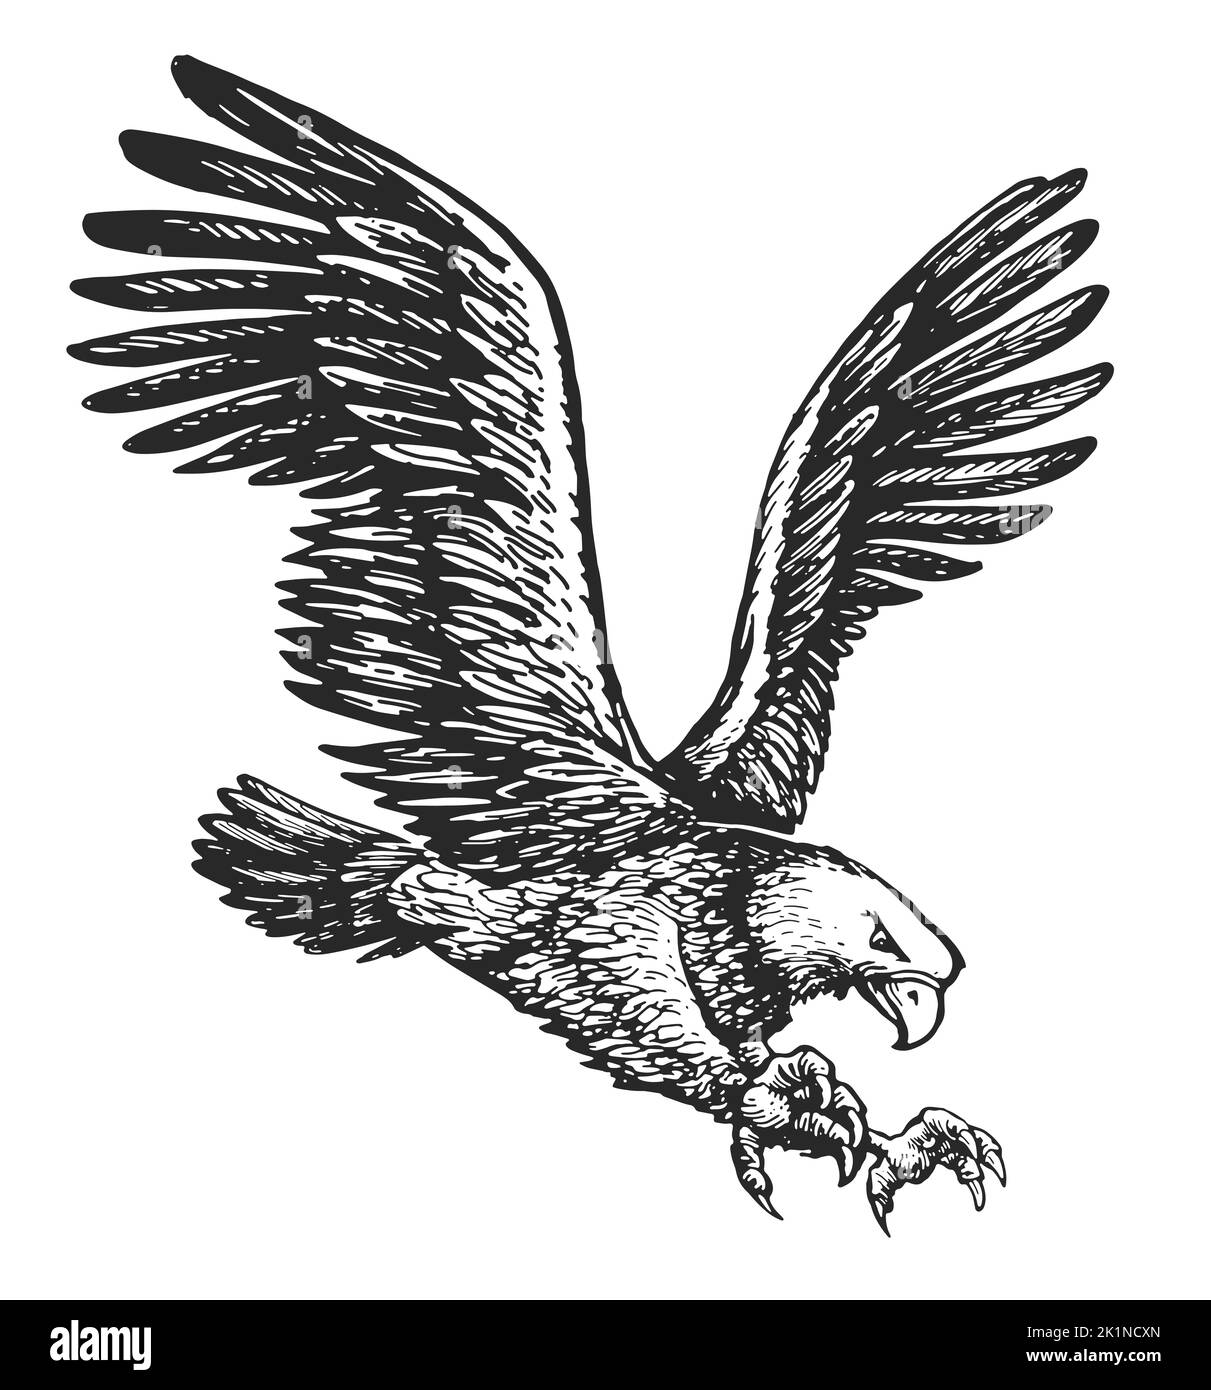 Águila voladora aislada sobre fondo blanco. Boceto de pájaro animal. Ilustración dibujada a mano en estilo grabado vintage Foto de stock